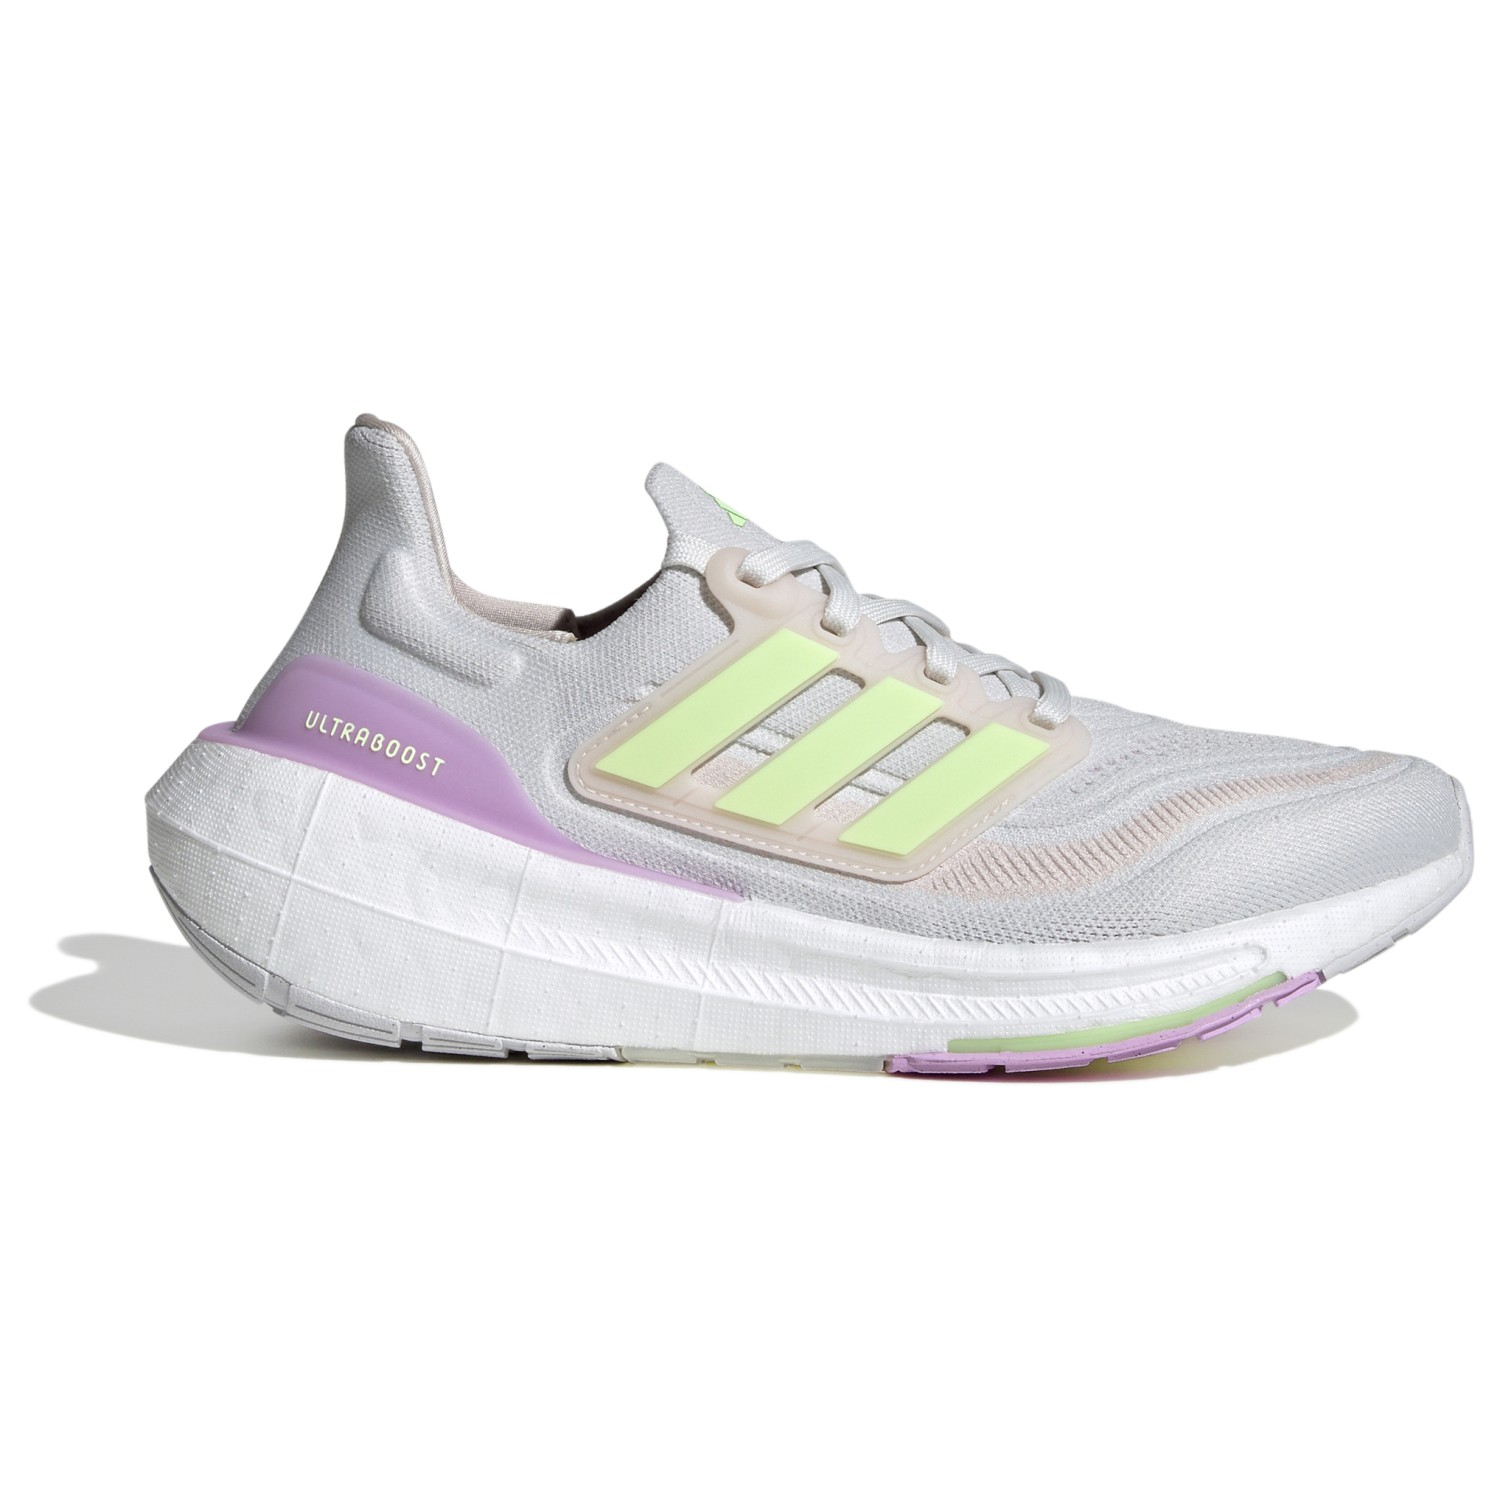 Беговая обувь Adidas Women's Ultraboost Light, цвет Crystal White/Green Spark/Bliss Lilac